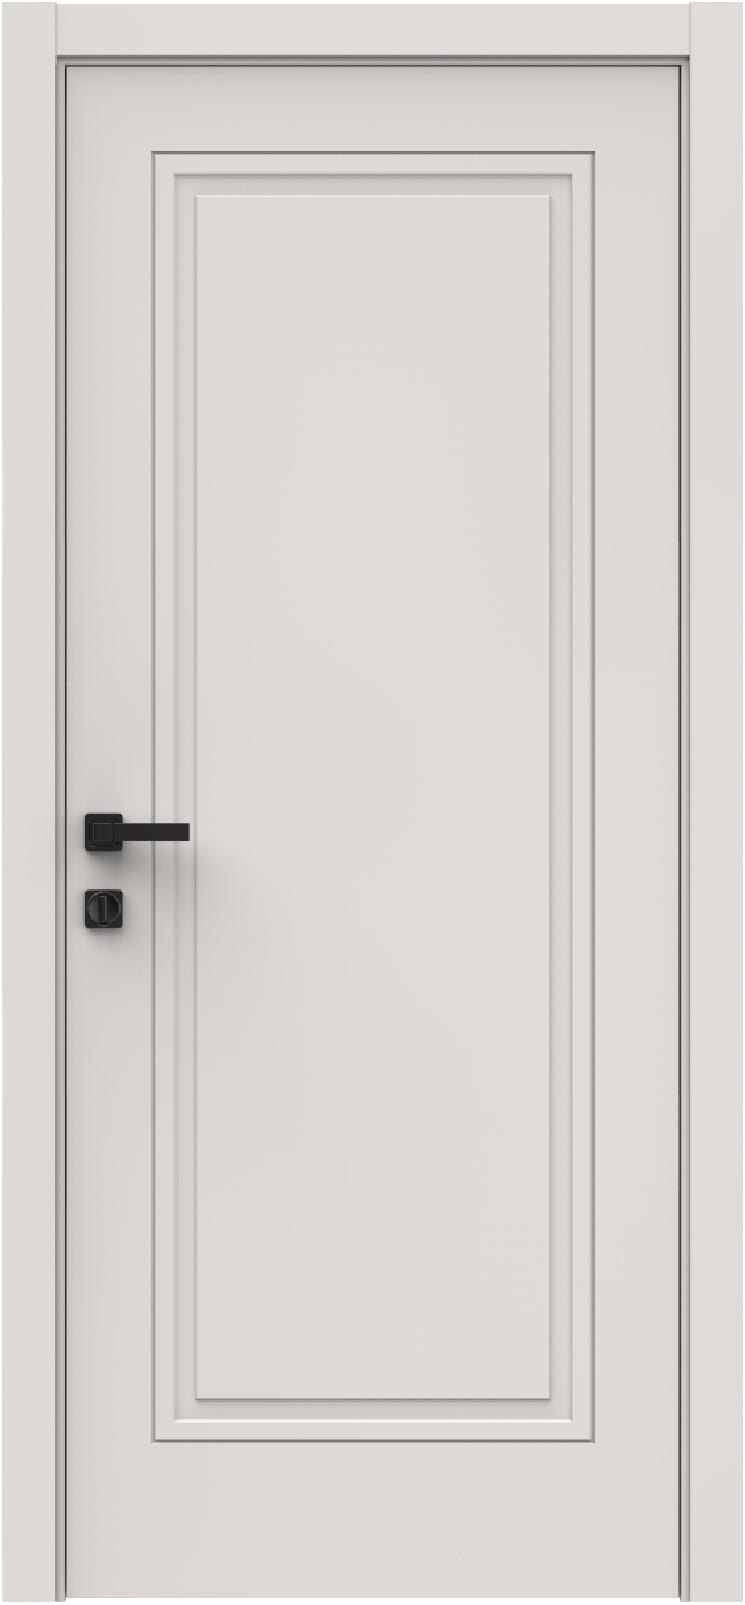 Questdoors Межкомнатная дверь QID1, арт. 26321 - фото №1